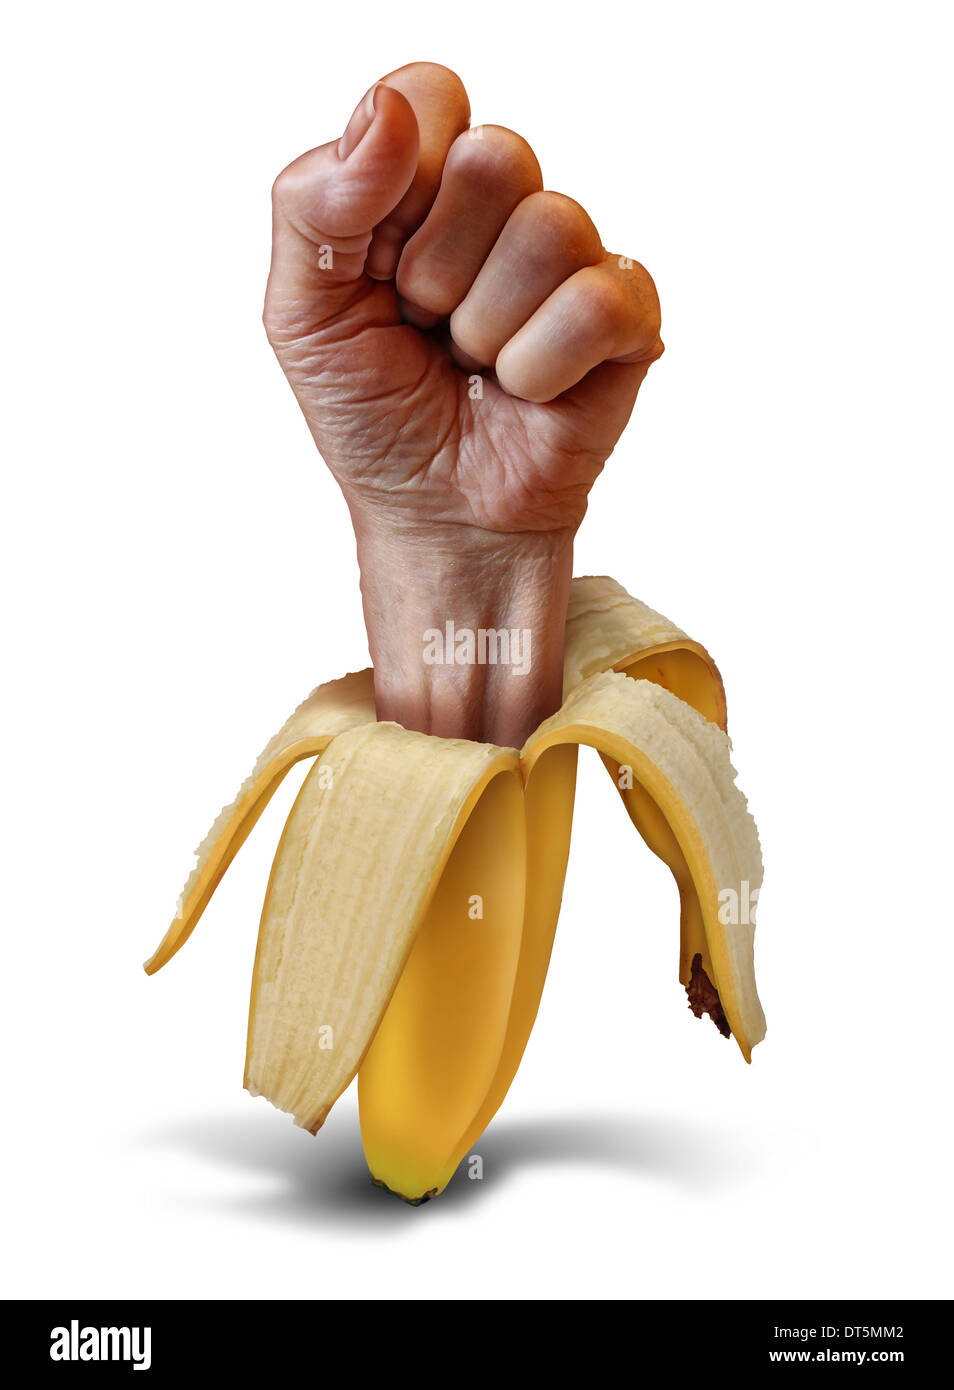 Alimentation Nutrition concept alimentaire avec une poigne de main sortant d'une peau de banane comme métaphore pour manger sain et vivre une vie digne en consommant des fruits et légumes frais. Banque D'Images